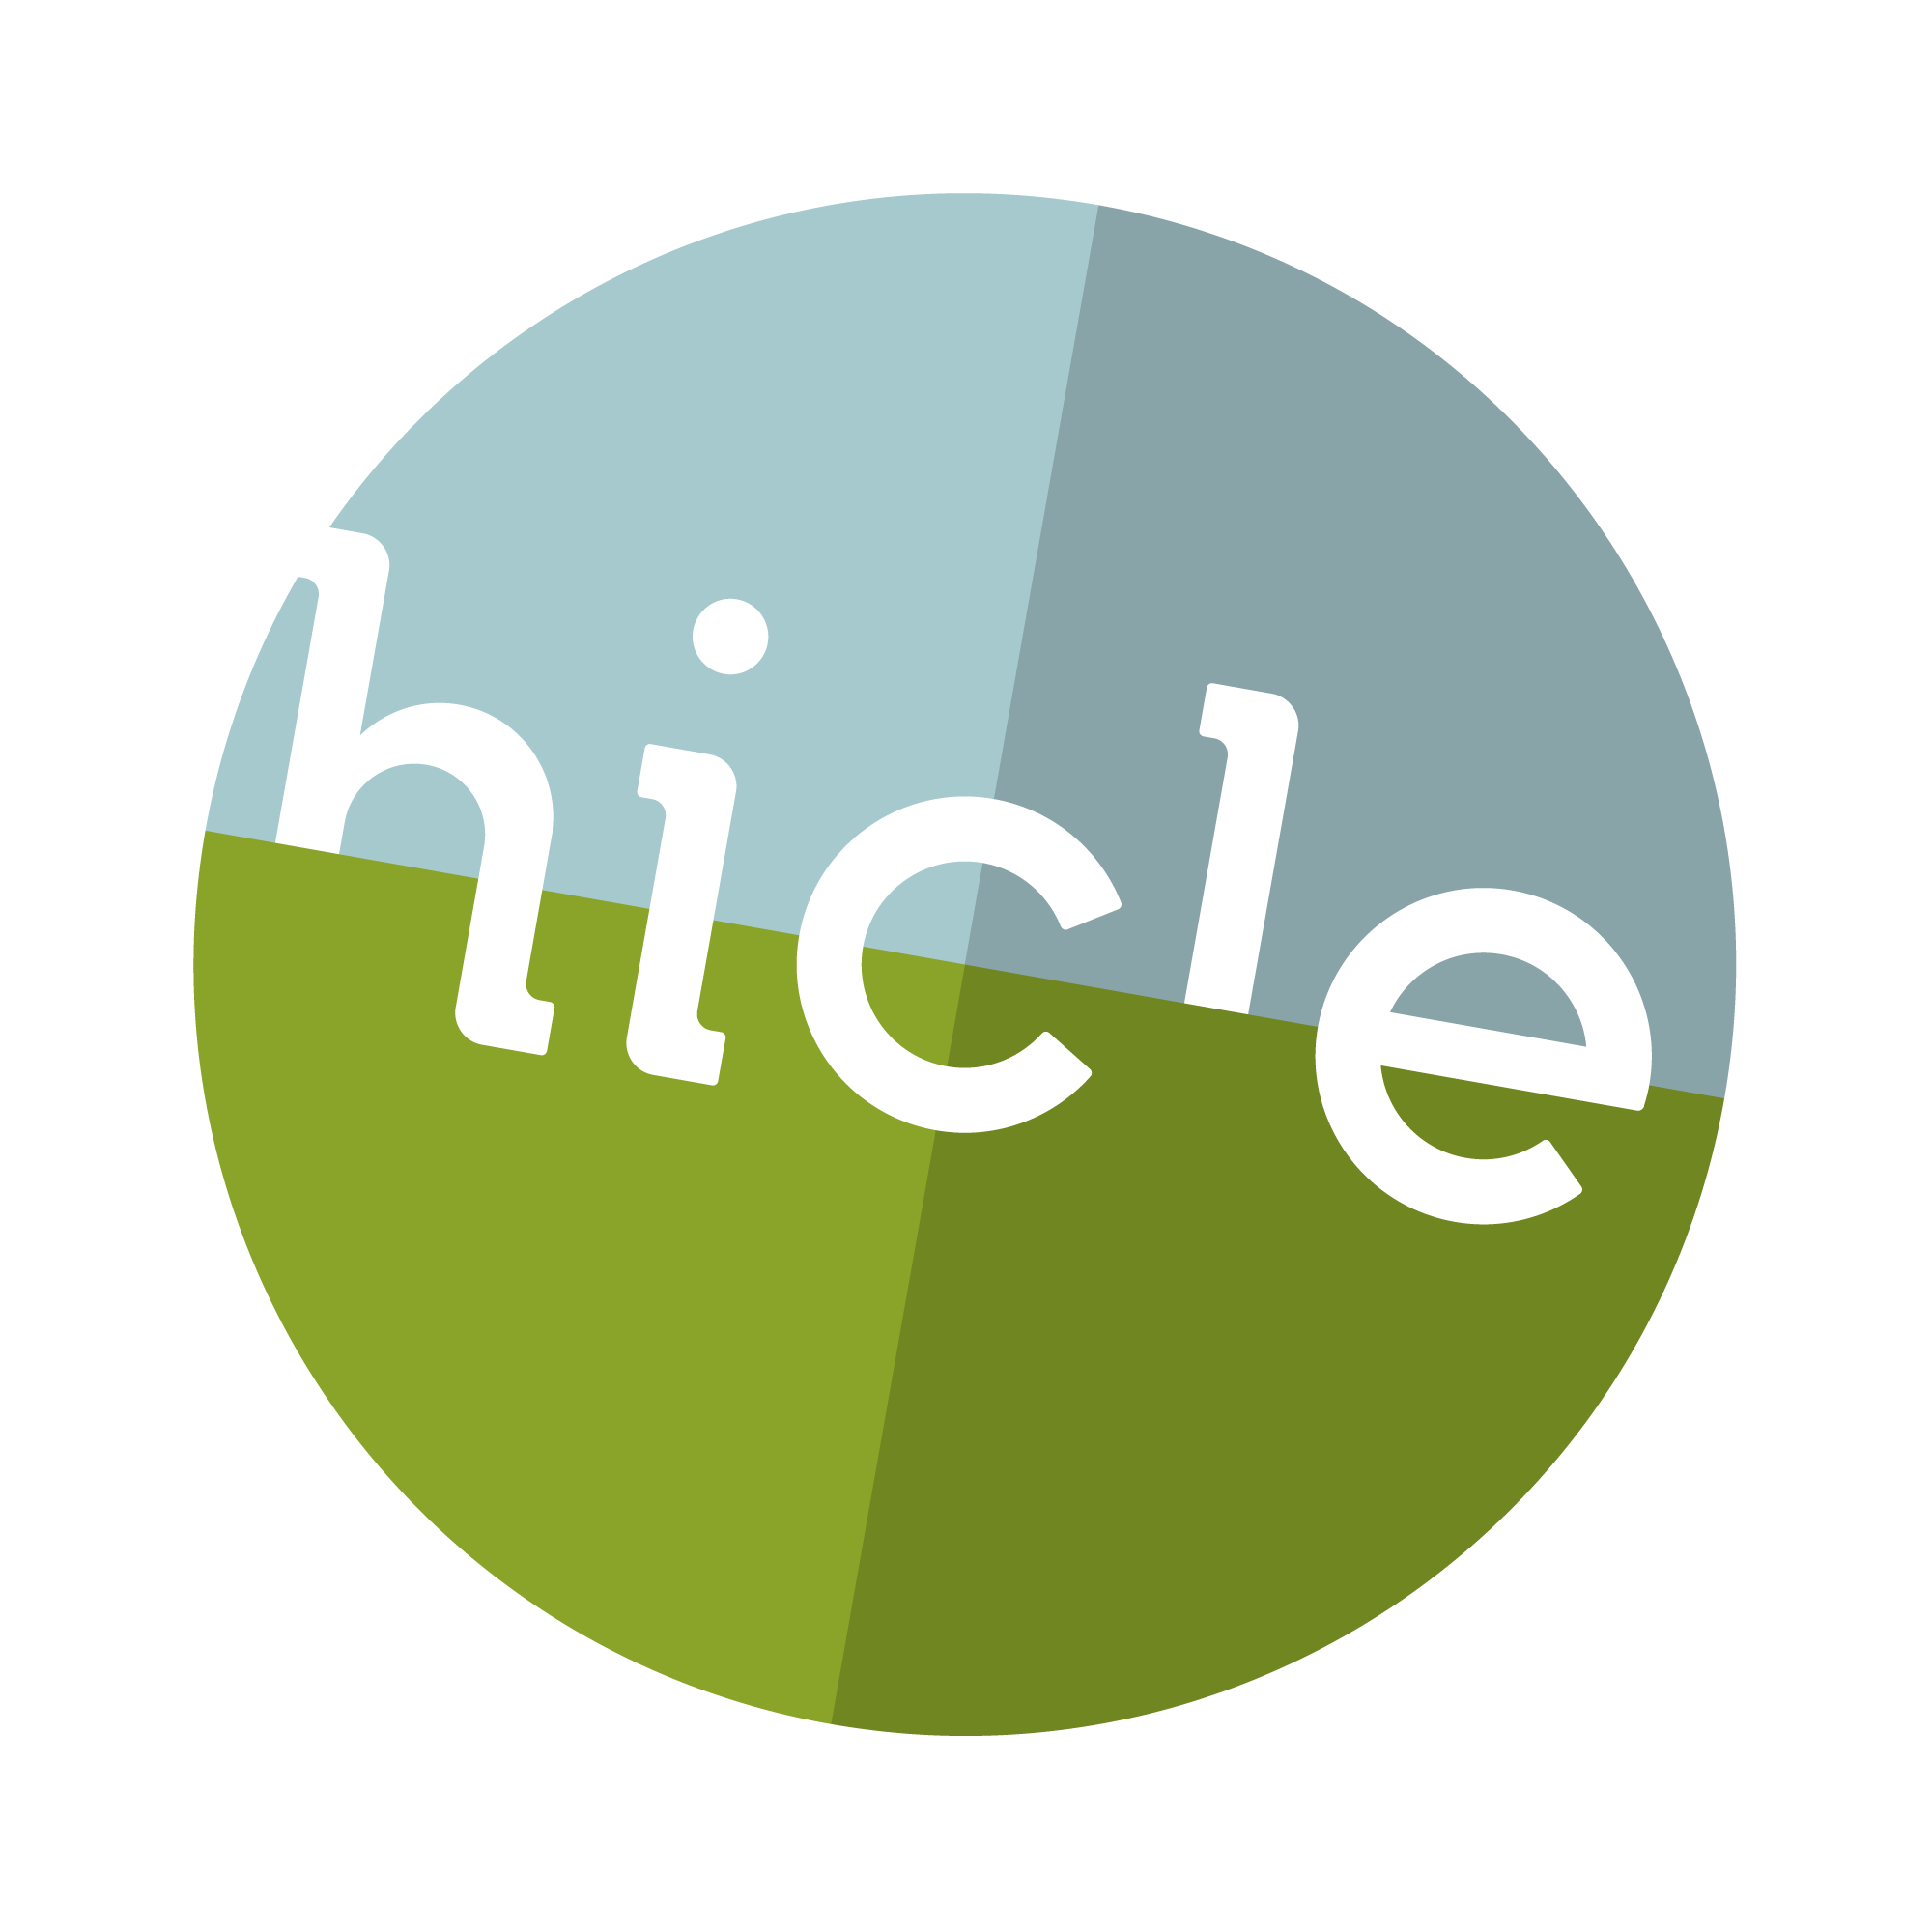 Hicle